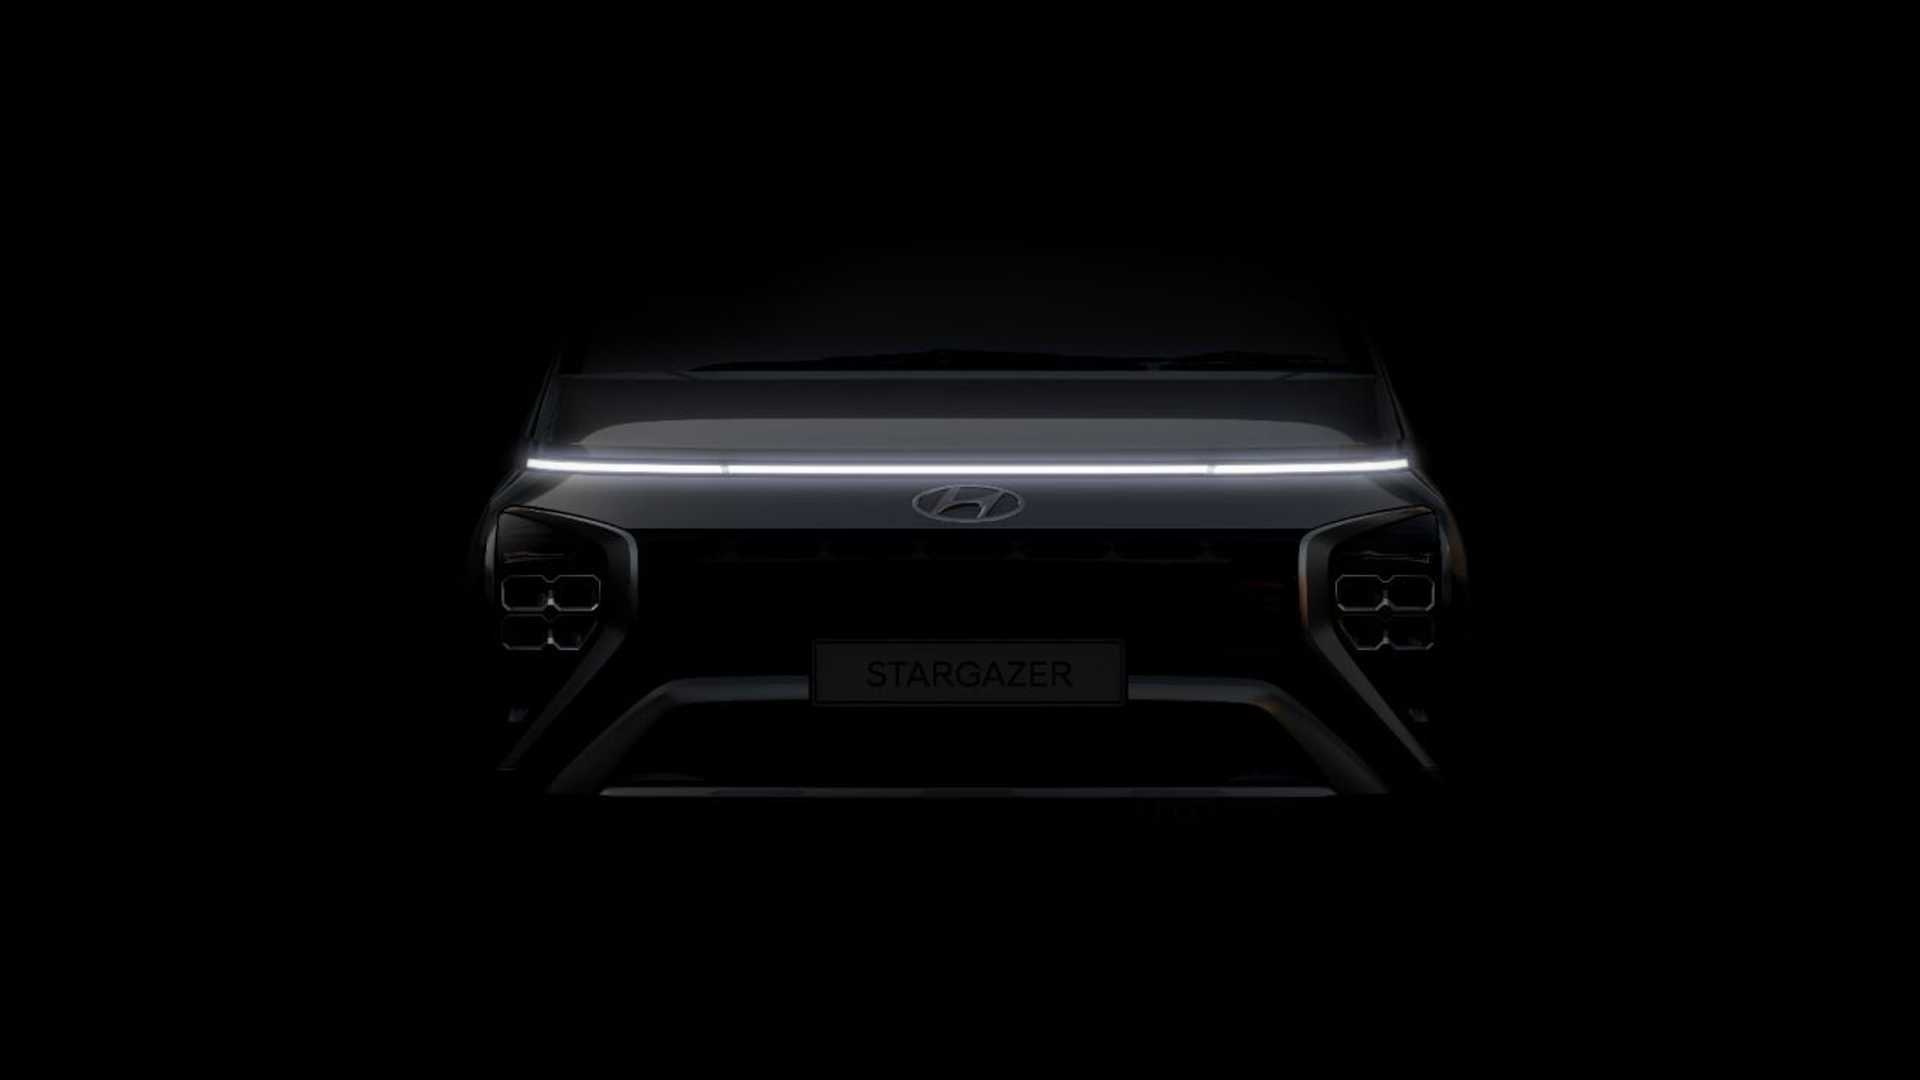 Hyundai Stargazer: Mẫu MPV giá rẻ mới cho thị trường ĐNÁ, cạnh tranh Mitsubishi Xpander hyundai-stargazer-teaser-2.jpg